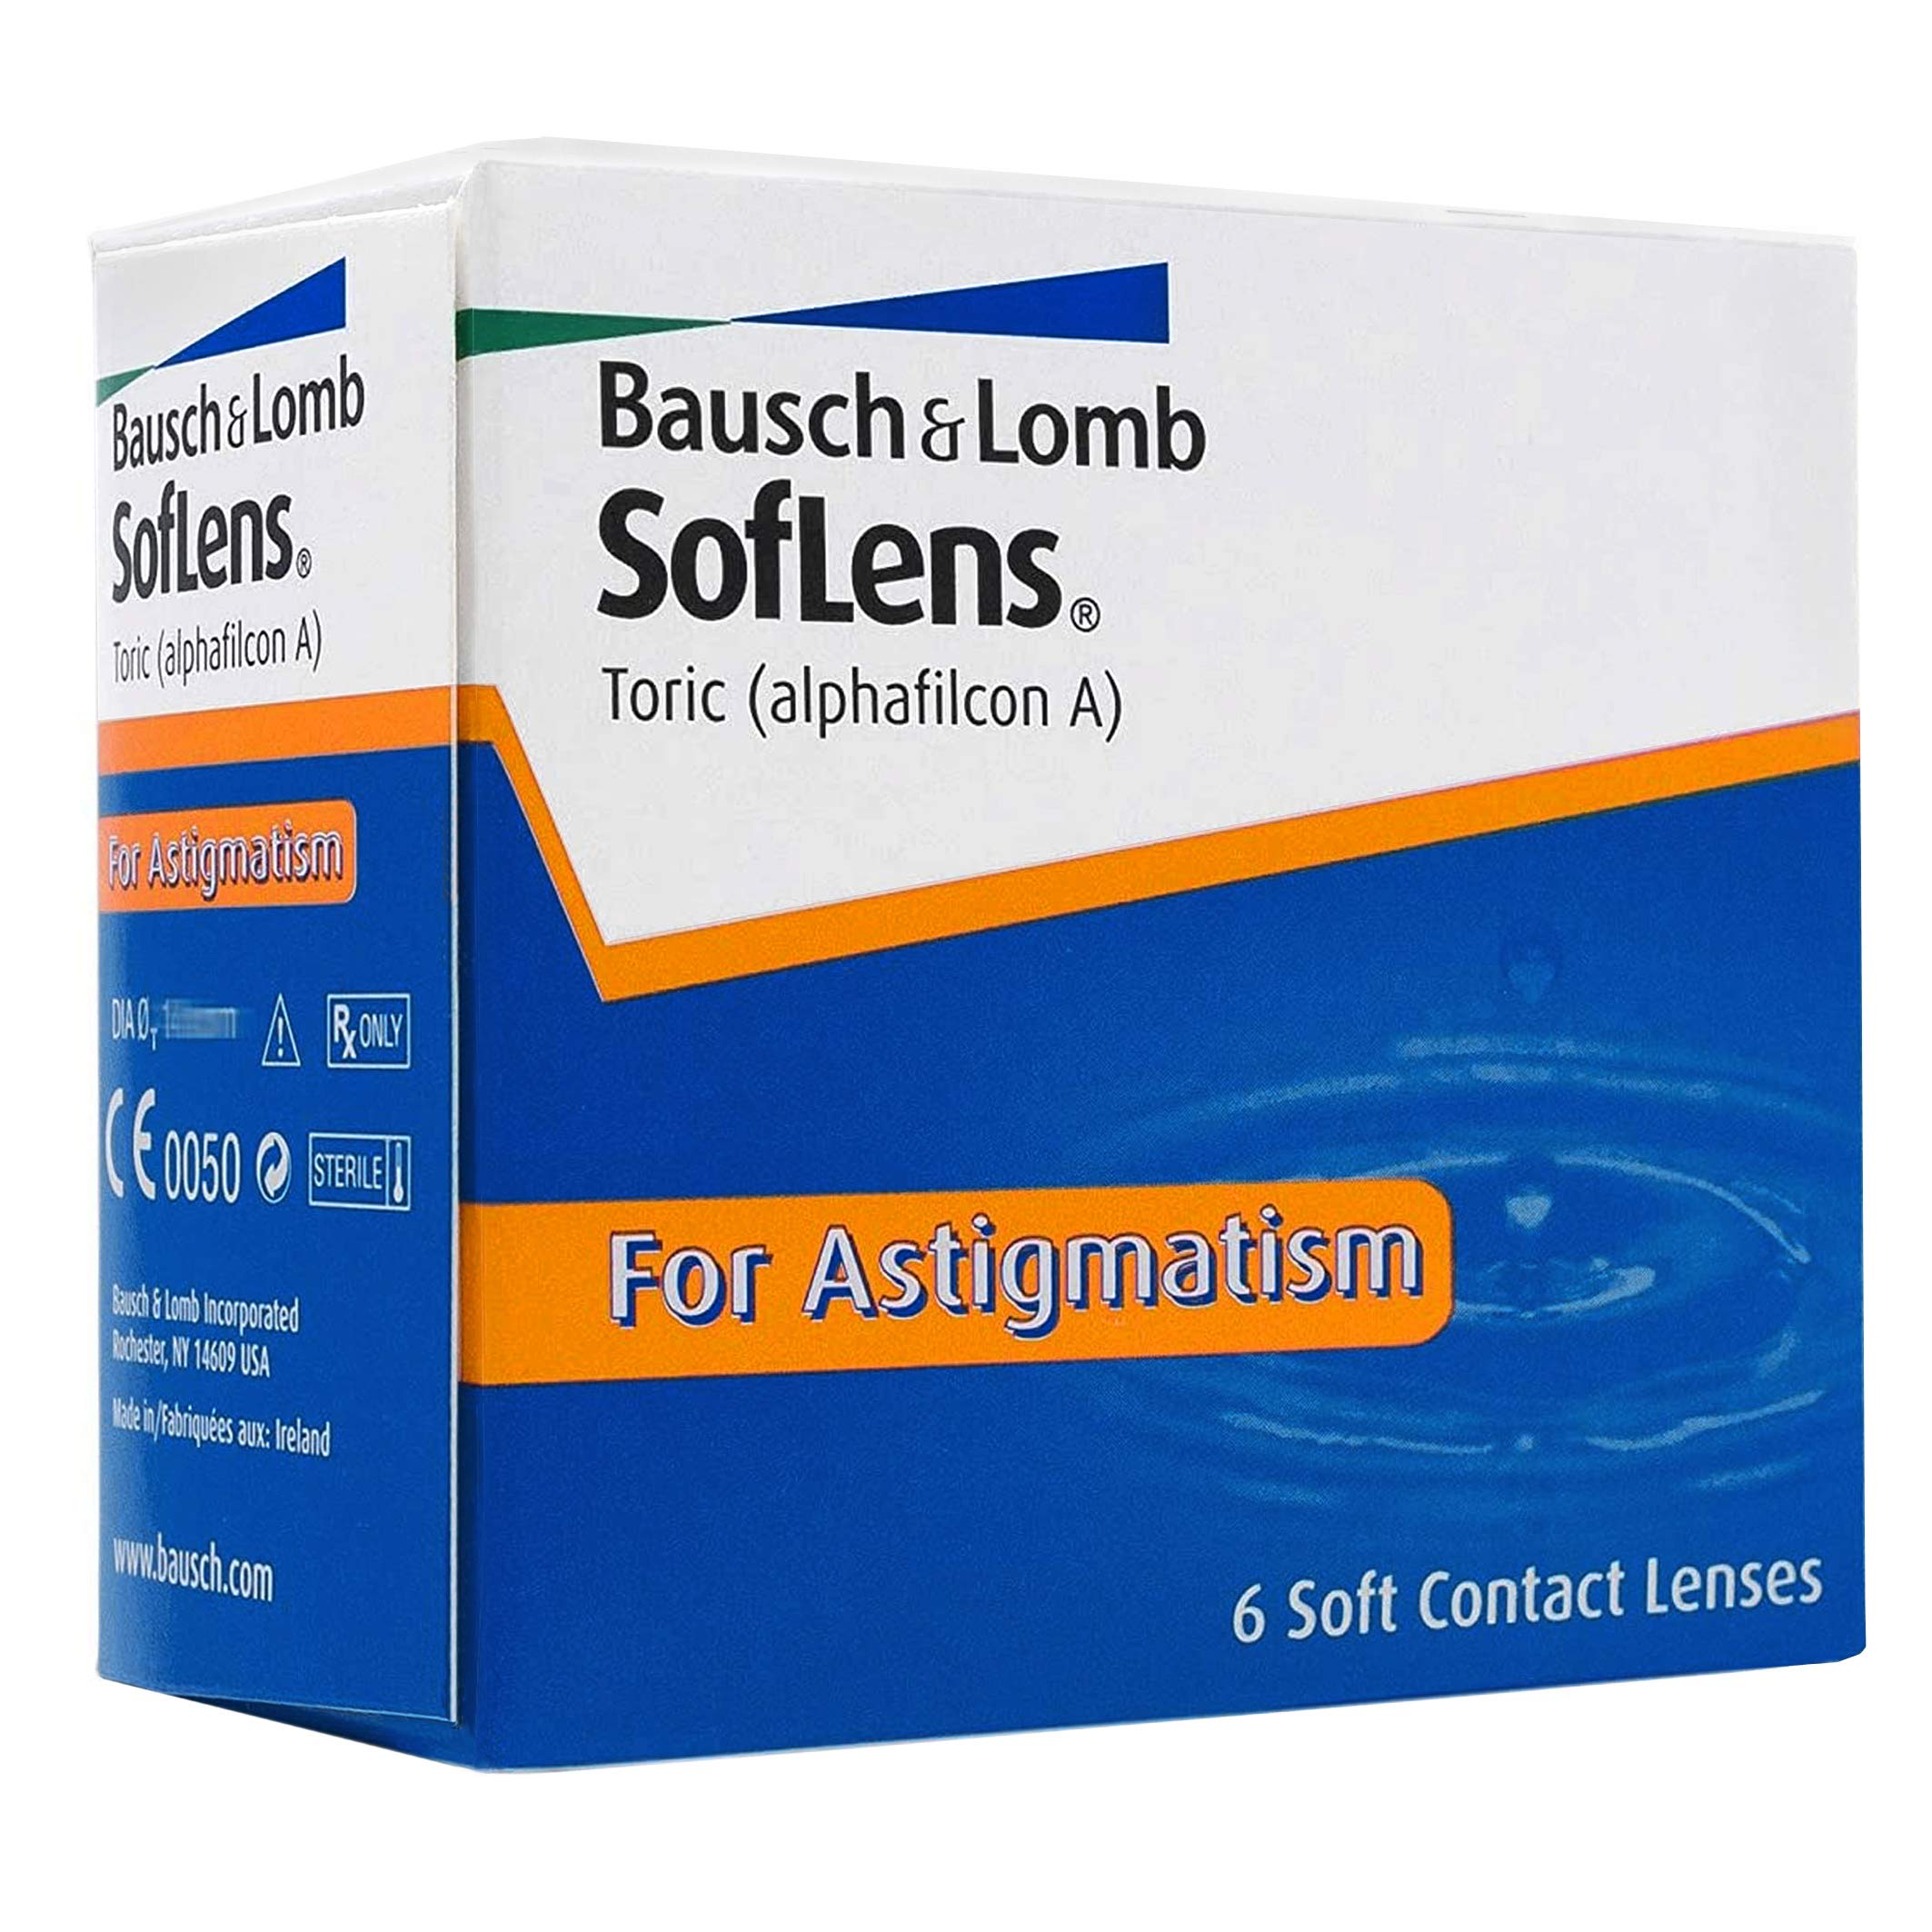 Bausch + Lomb SofLens Toric Monatslinsen, torische Kontaktlinsen, weich, 6 Stück BC 8.5 mm / DIA 14.5 / CYL -2.75 / Achse 10 / -9 Dioptrien